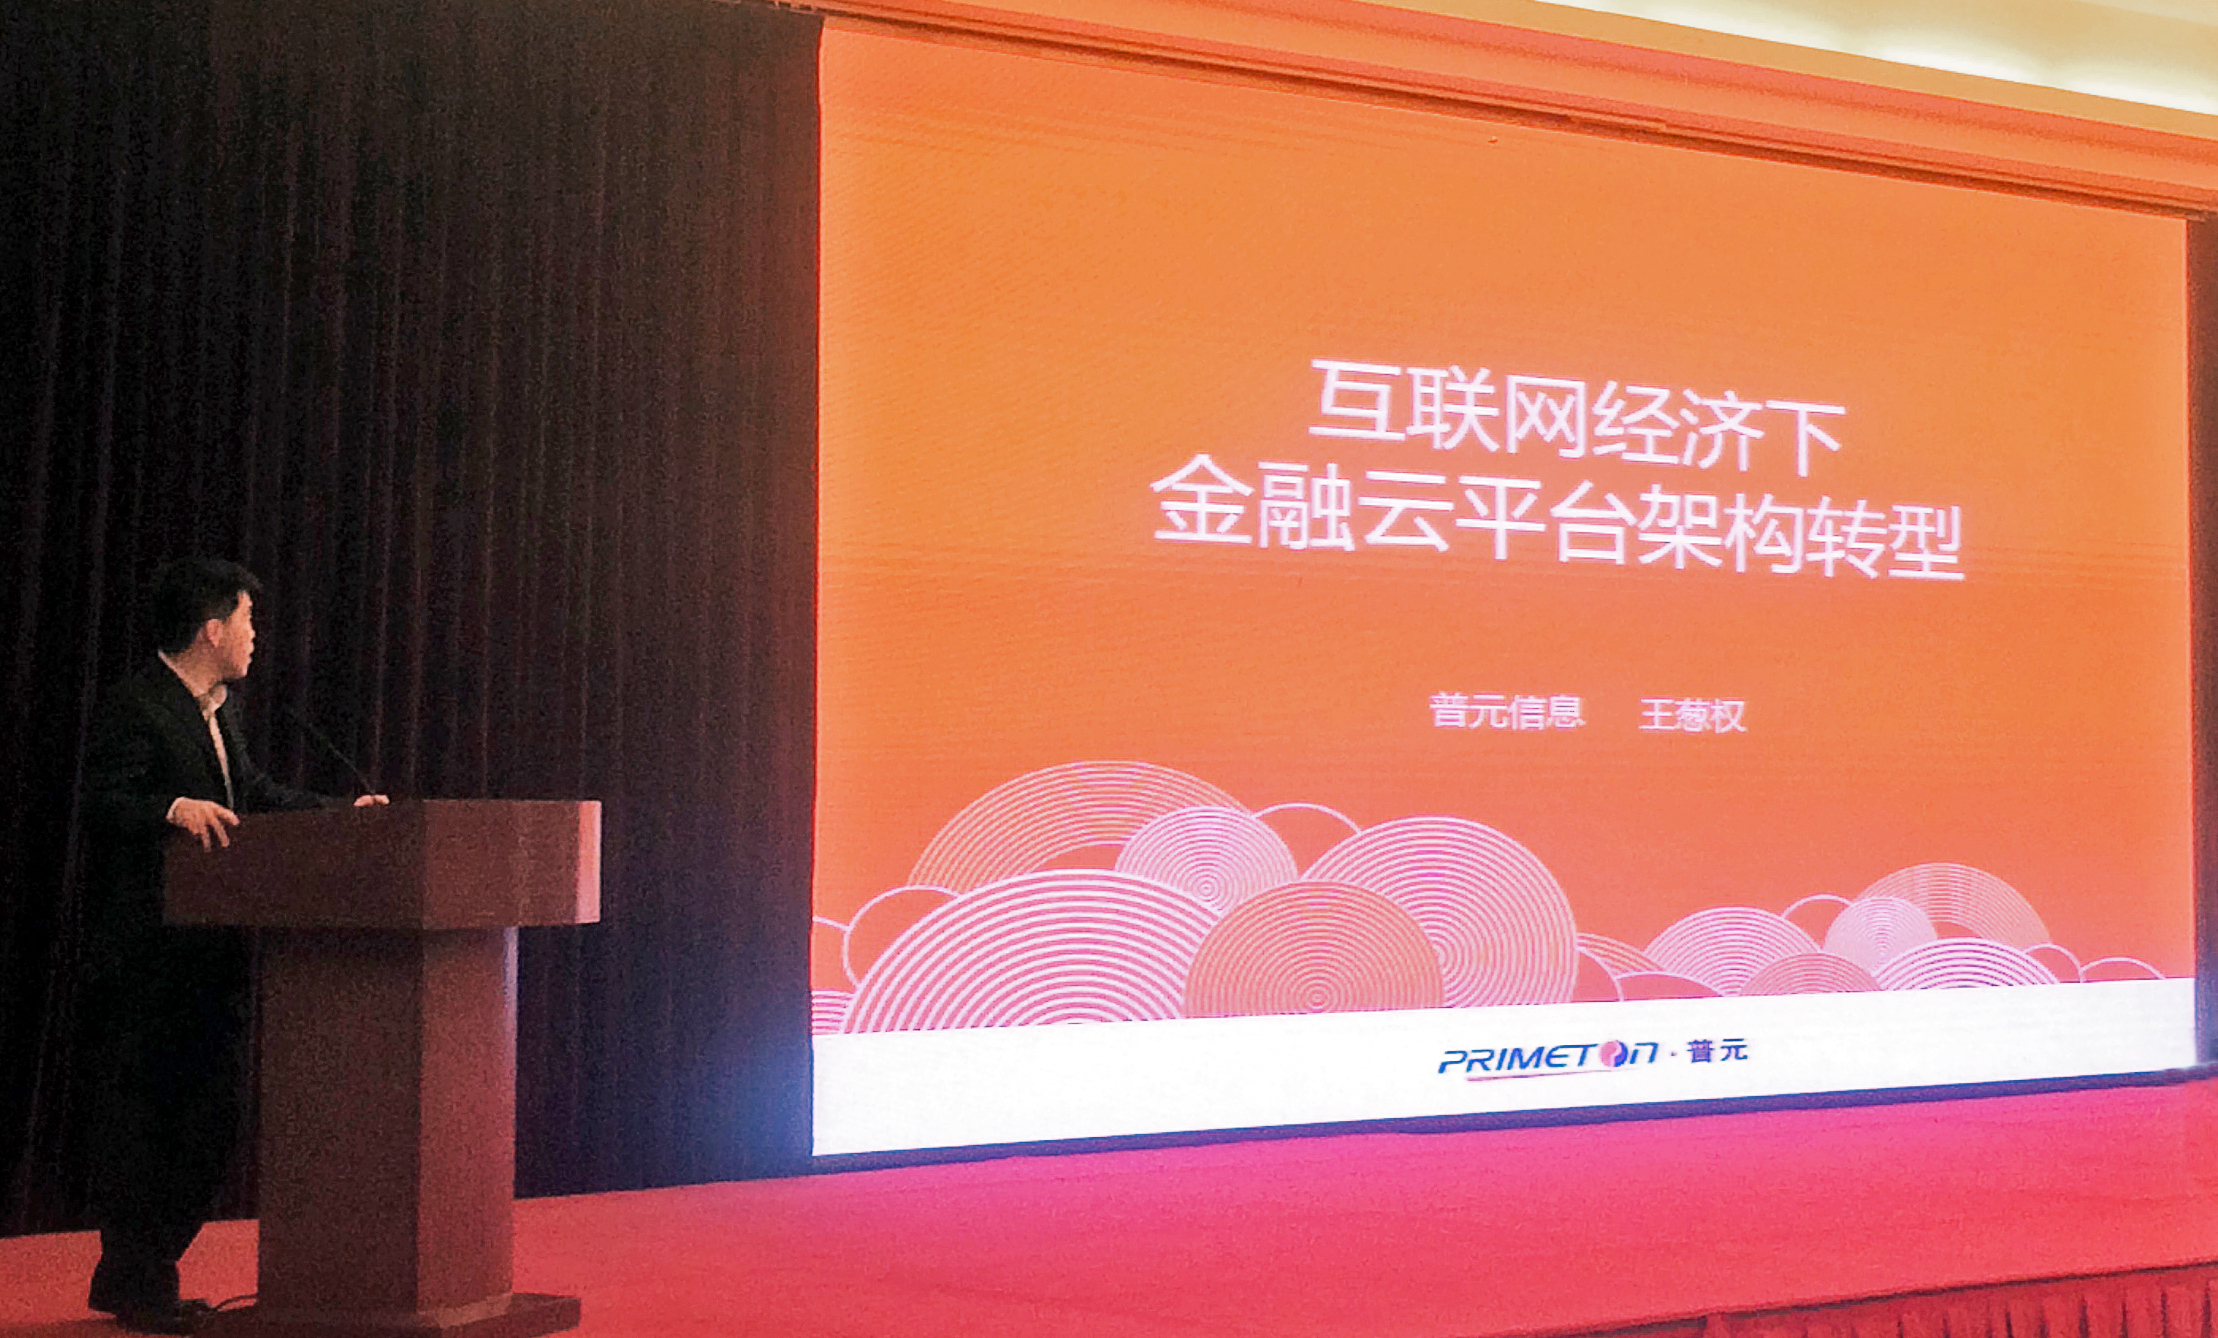 王葱权受邀发表《互联网经济下金融云平台架构转型》演讲